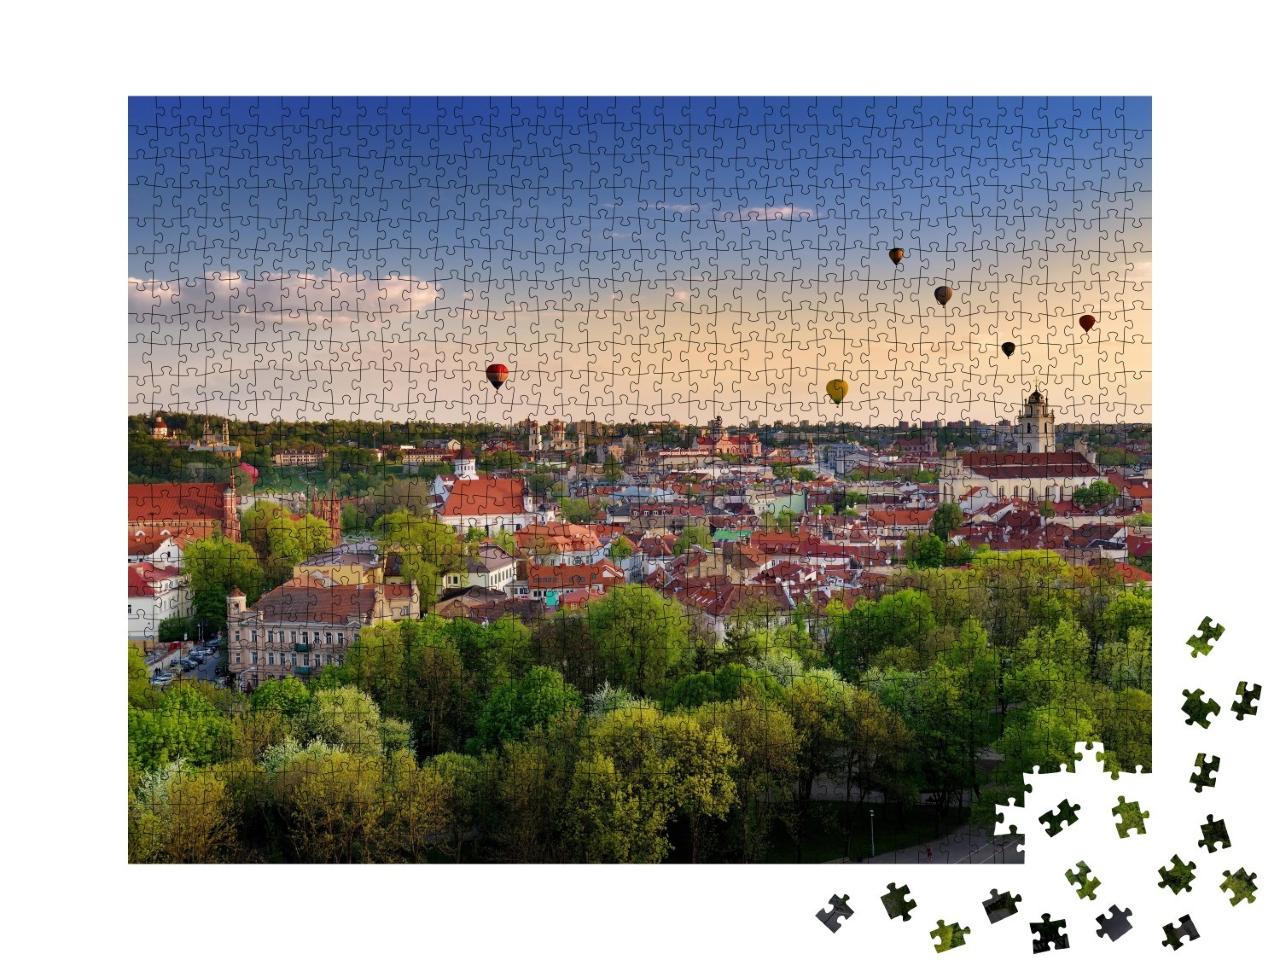 Puzzle de 1000 pièces « Panorama estival de la vieille ville de Vilnius avec des montgolfières colorées »